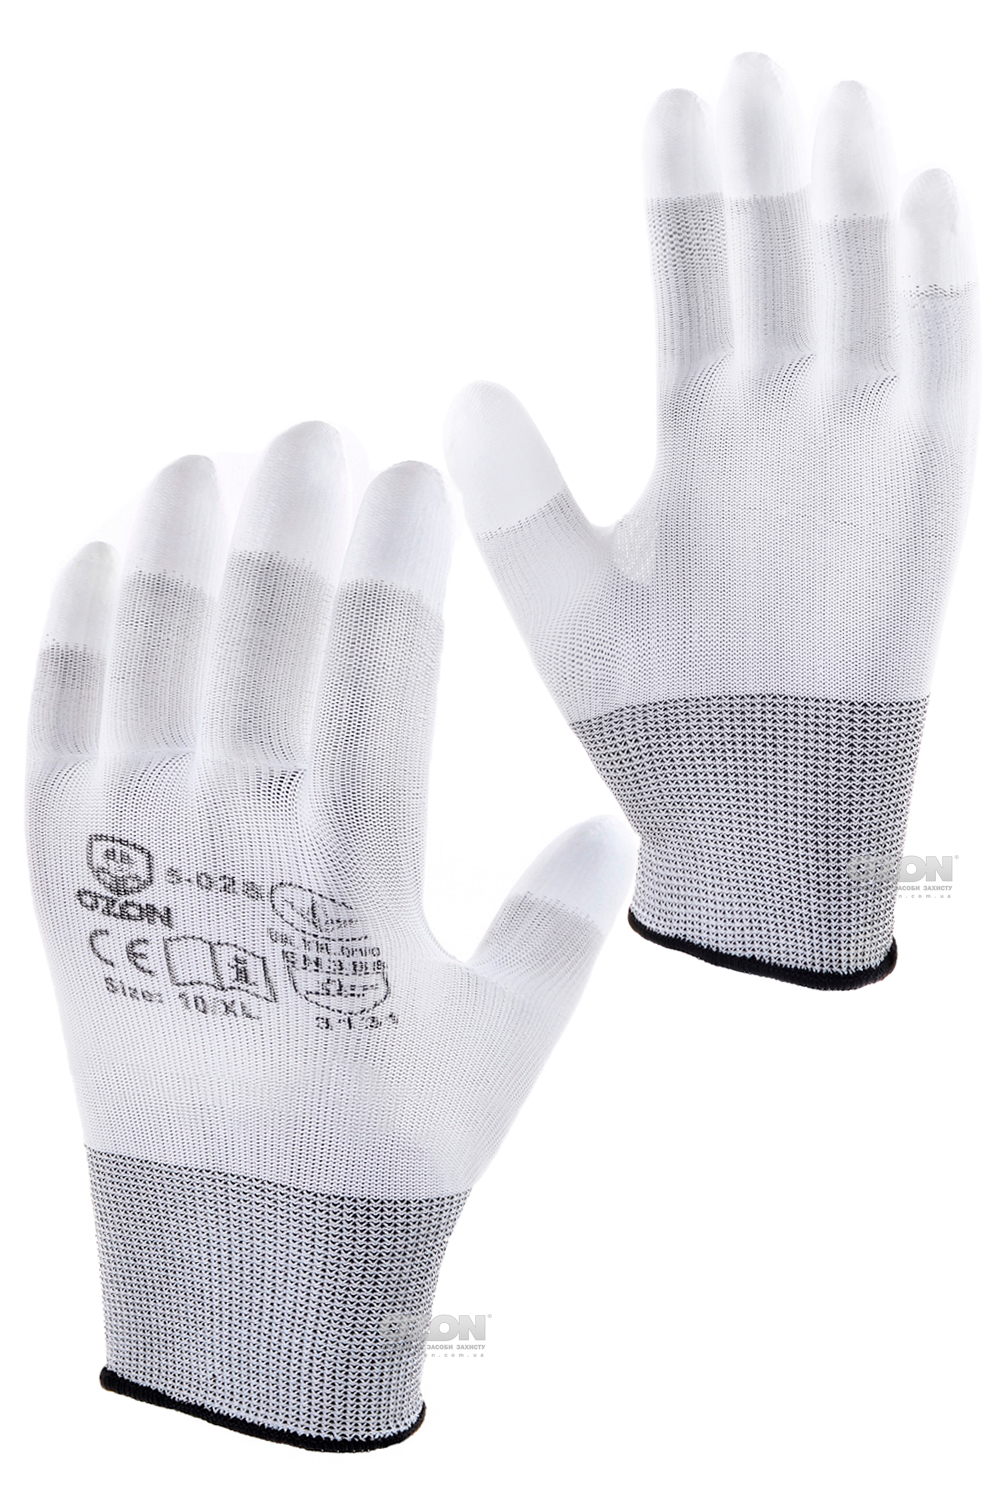 12 пар перчатки п/э с полиуретановым покрытием кончиков пальцев белые 5-028 - Фото 1